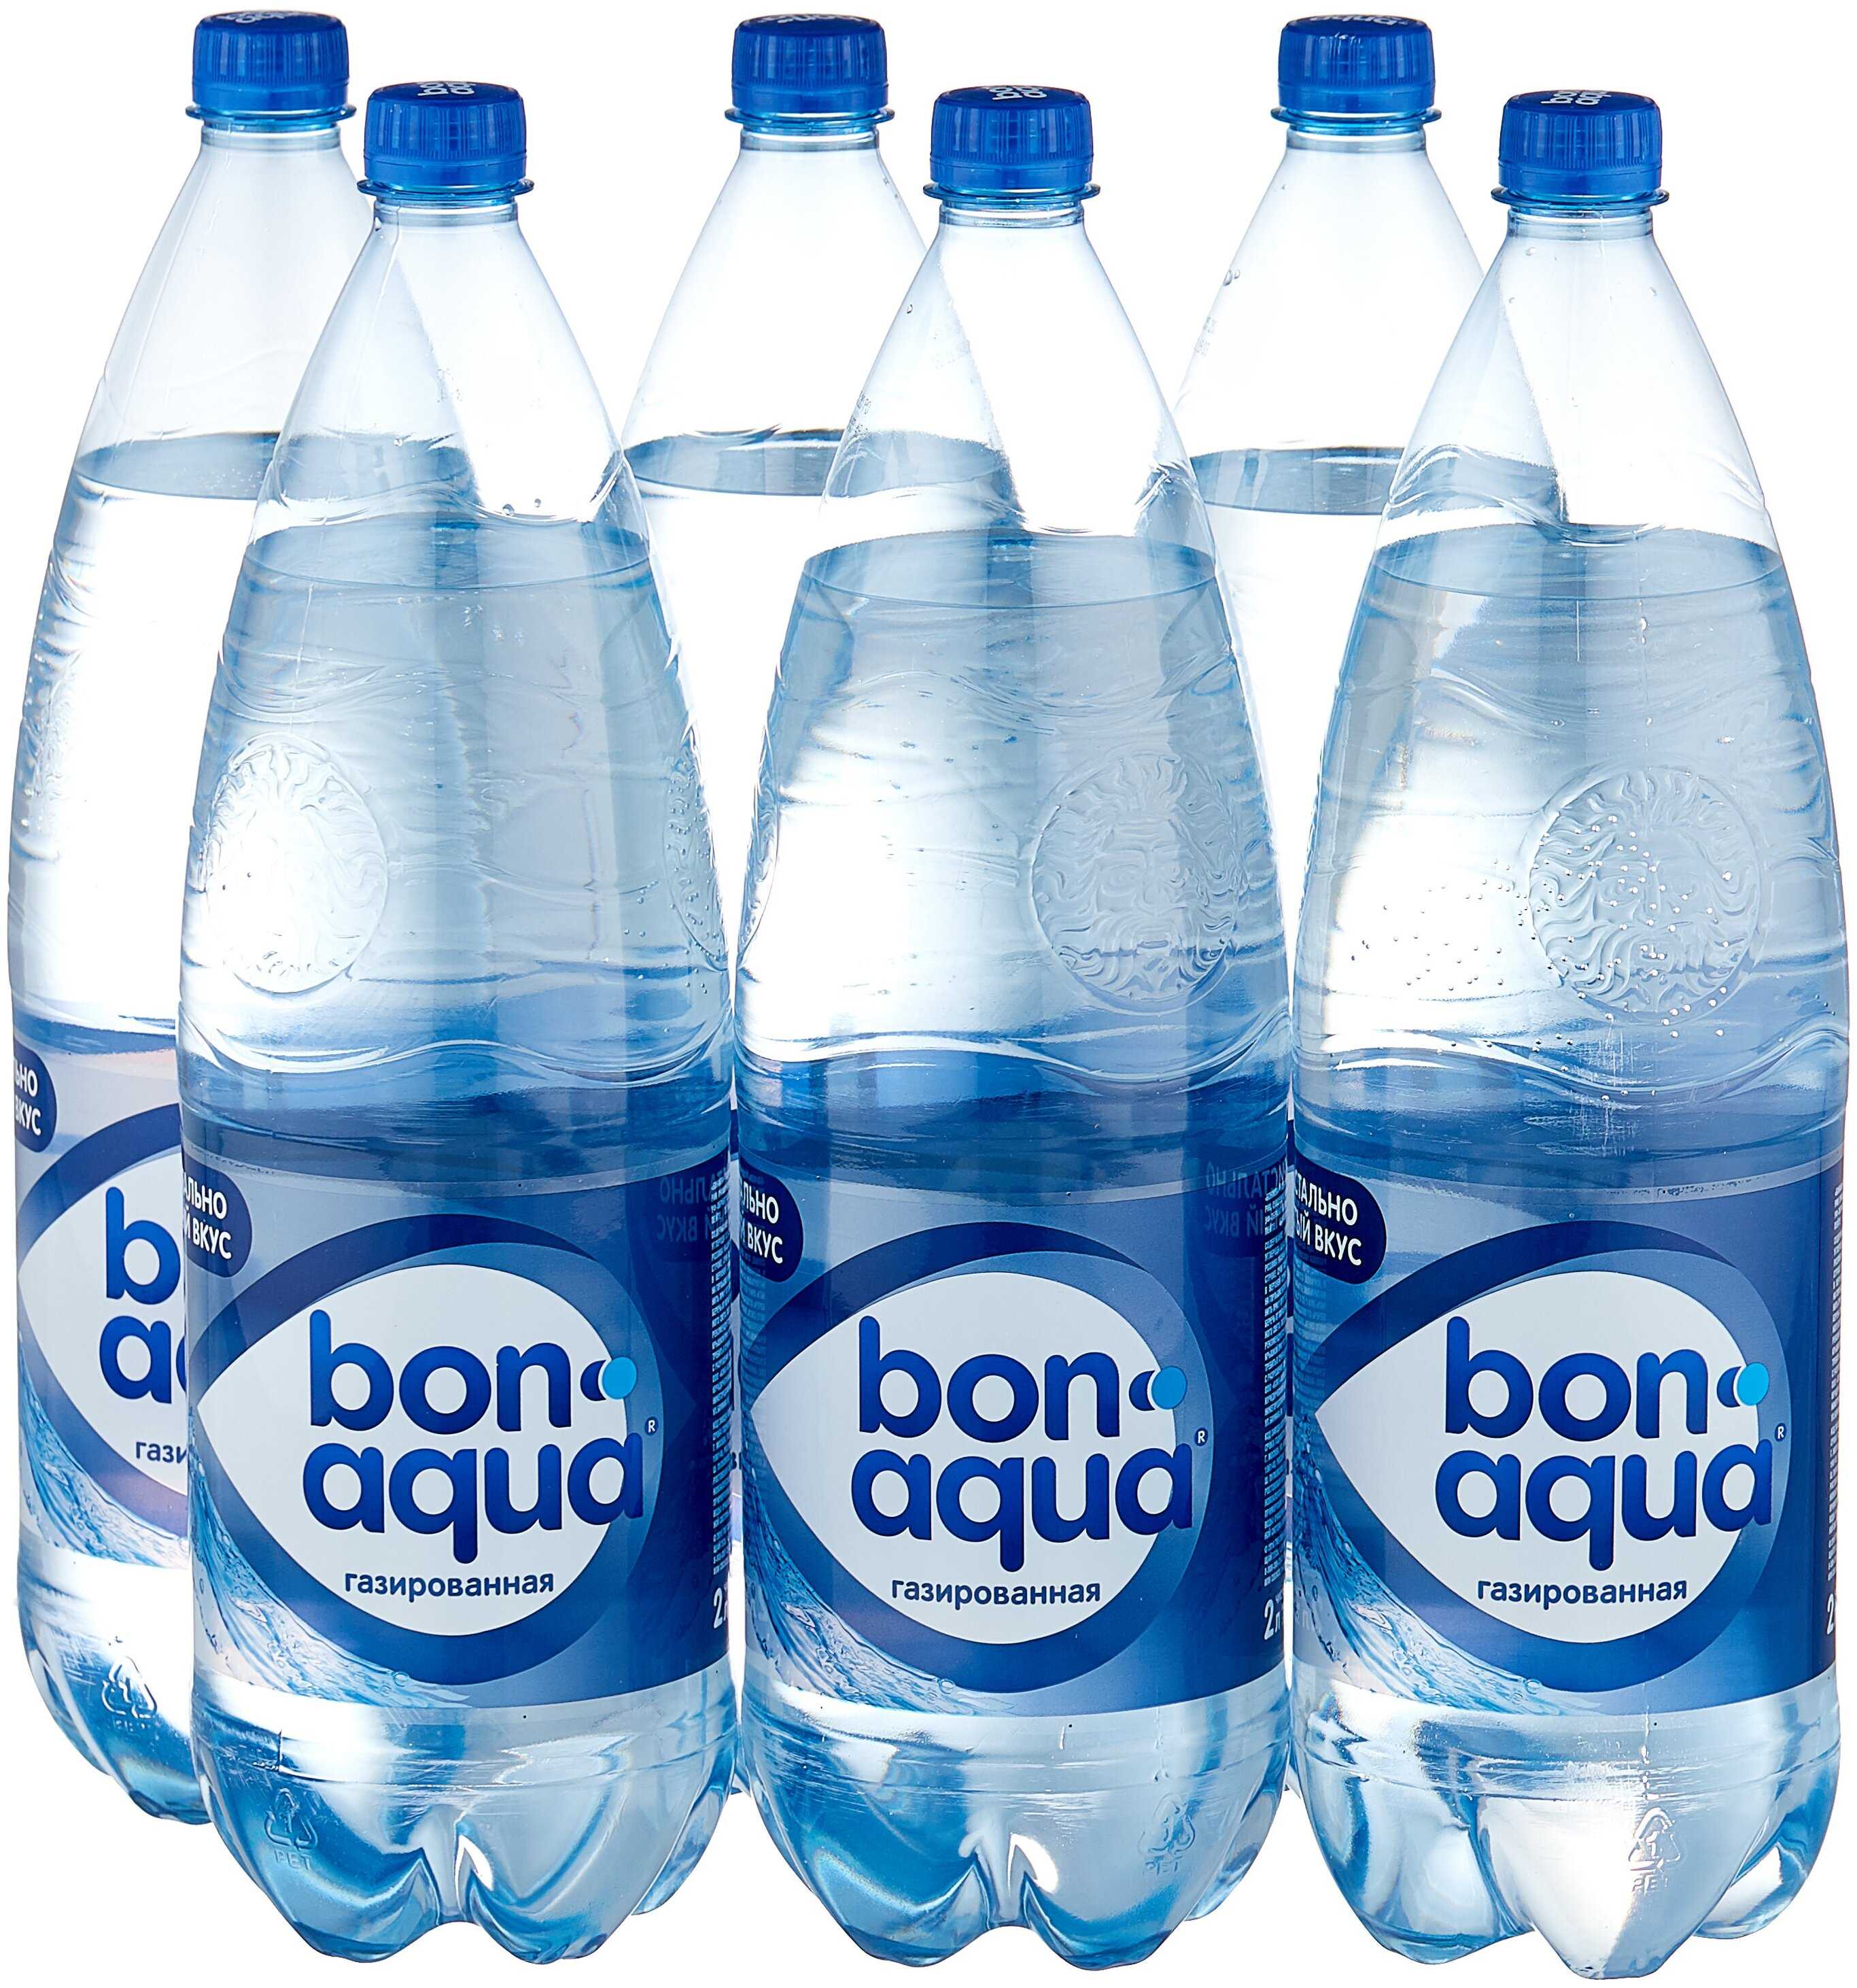 Бонаква (bonaqua) водичка от coca-cola company